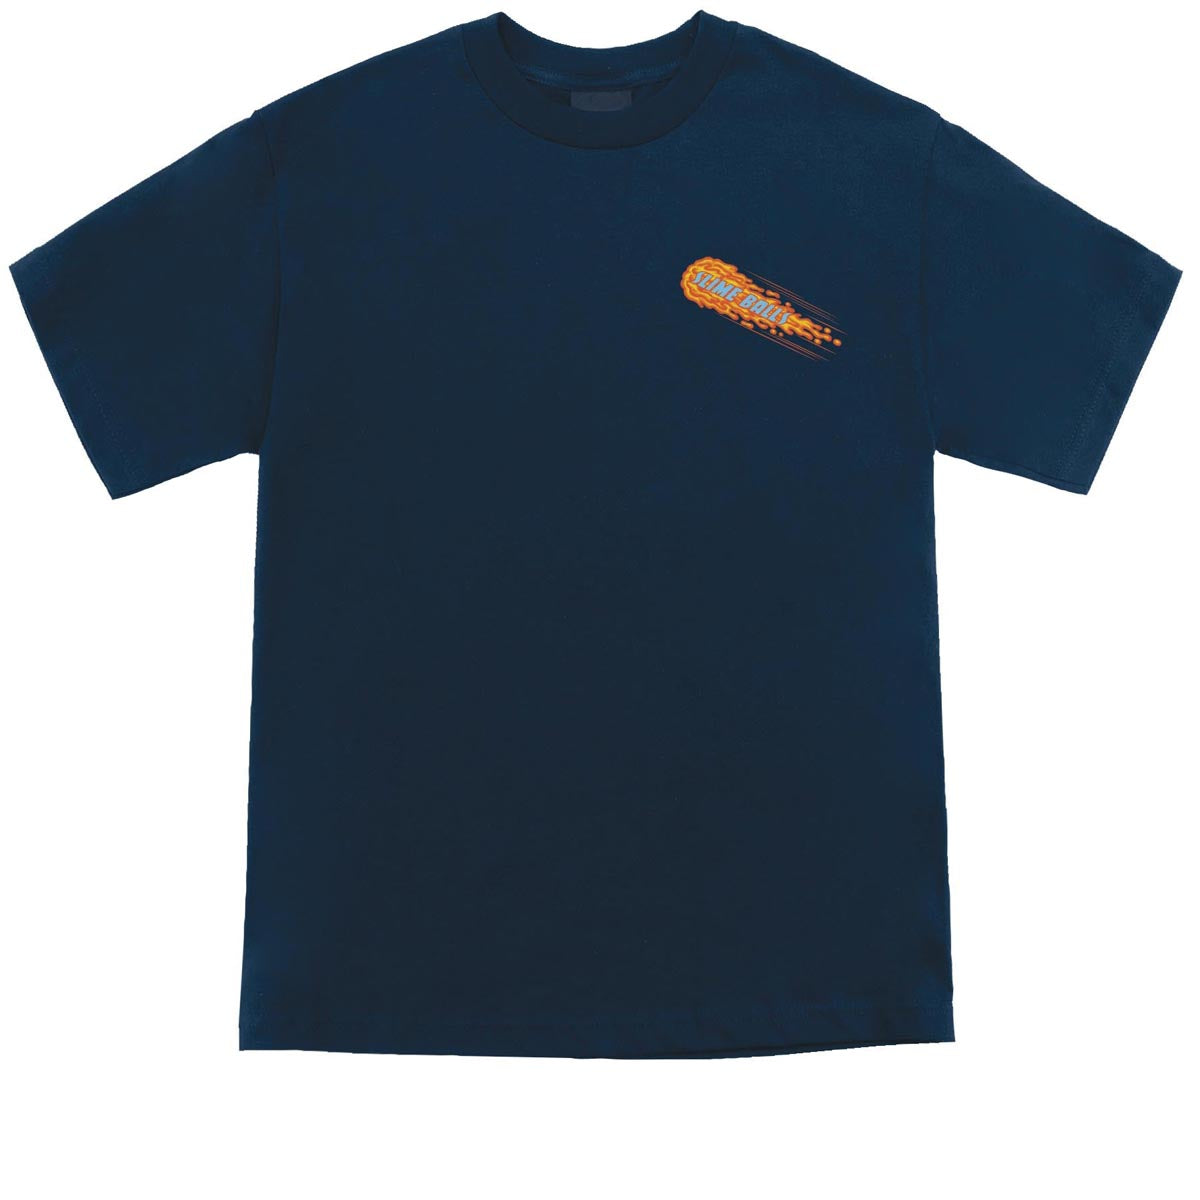 Slime Balls OG T-Shirt - Navy image 1